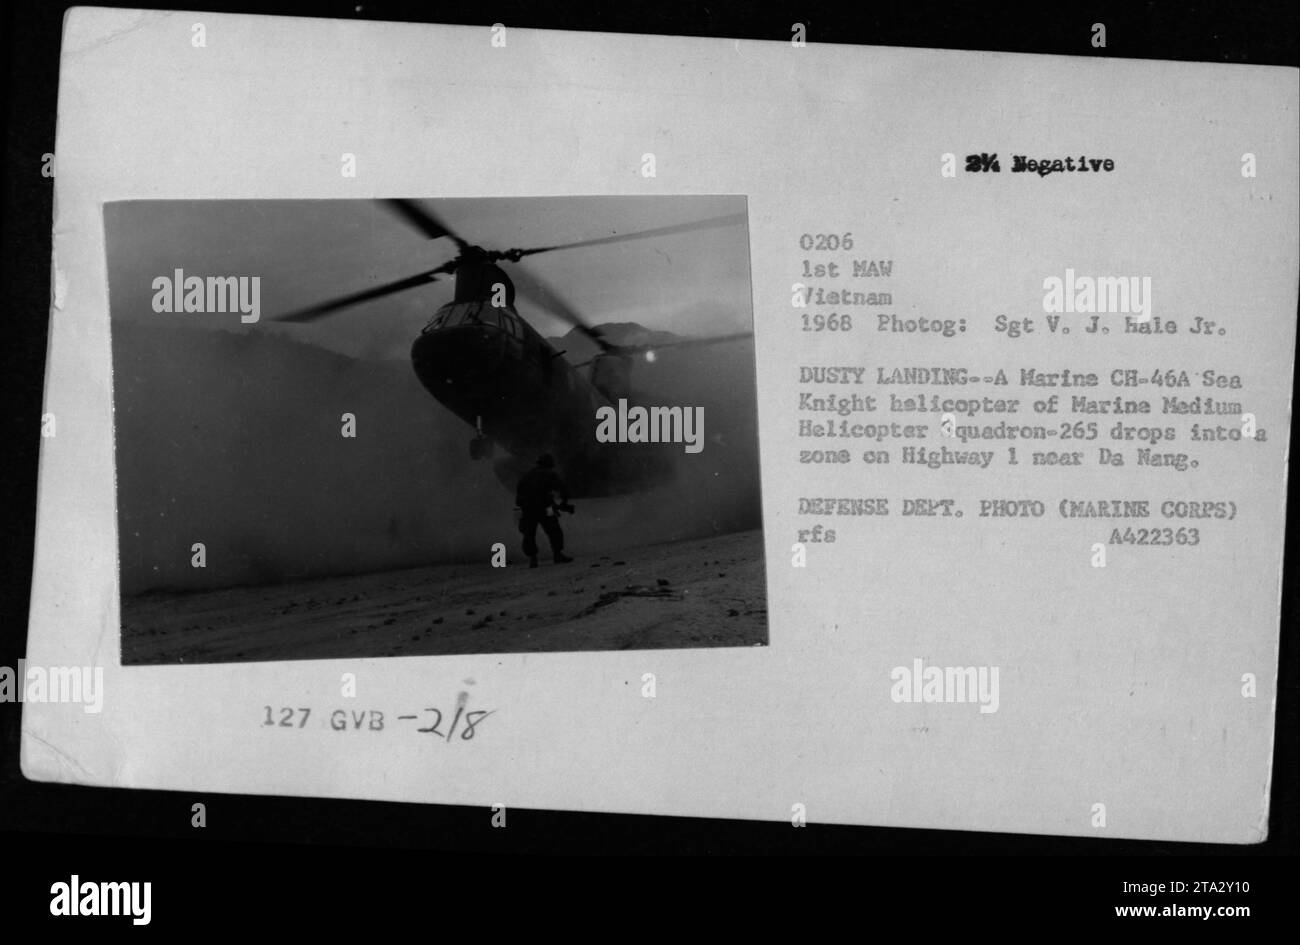 Marine CH-46A Sea Knight elicottero del Marine Medium Helicopter Squadron-265 atterrando sulla Highway 1 vicino a da Nang durante la guerra del Vietnam. Scattata nel 1968 dal Sgt V. J. Hale Jr., questa foto mostra l'elicottero in funzione. Immagine gentilmente concessa dal Dipartimento della difesa (US Marines). Foto Stock